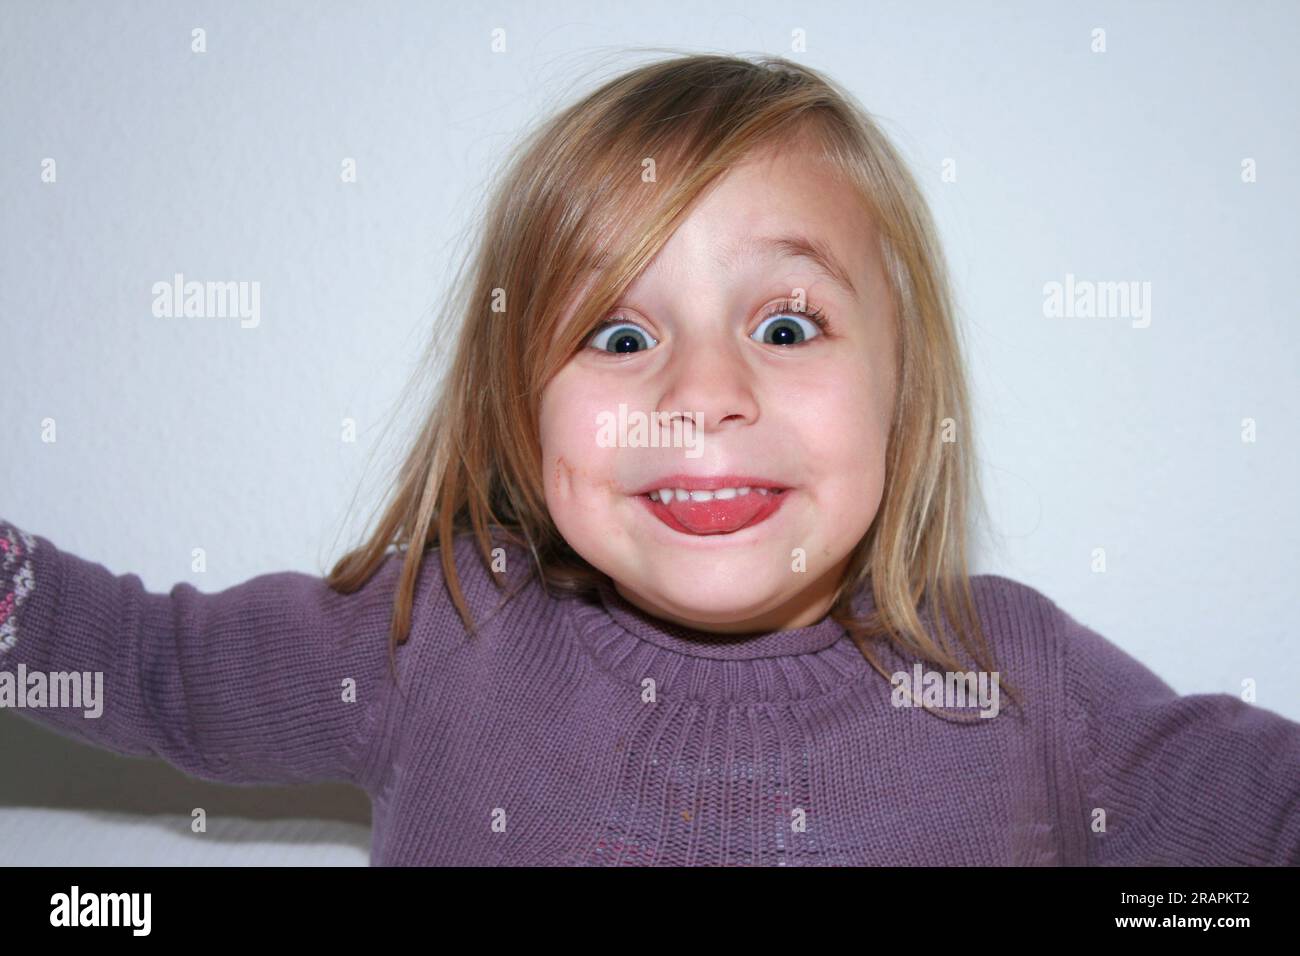 Drôle portrait d'enfant de quatre ans avec vue dans l'appareil photo Banque D'Images